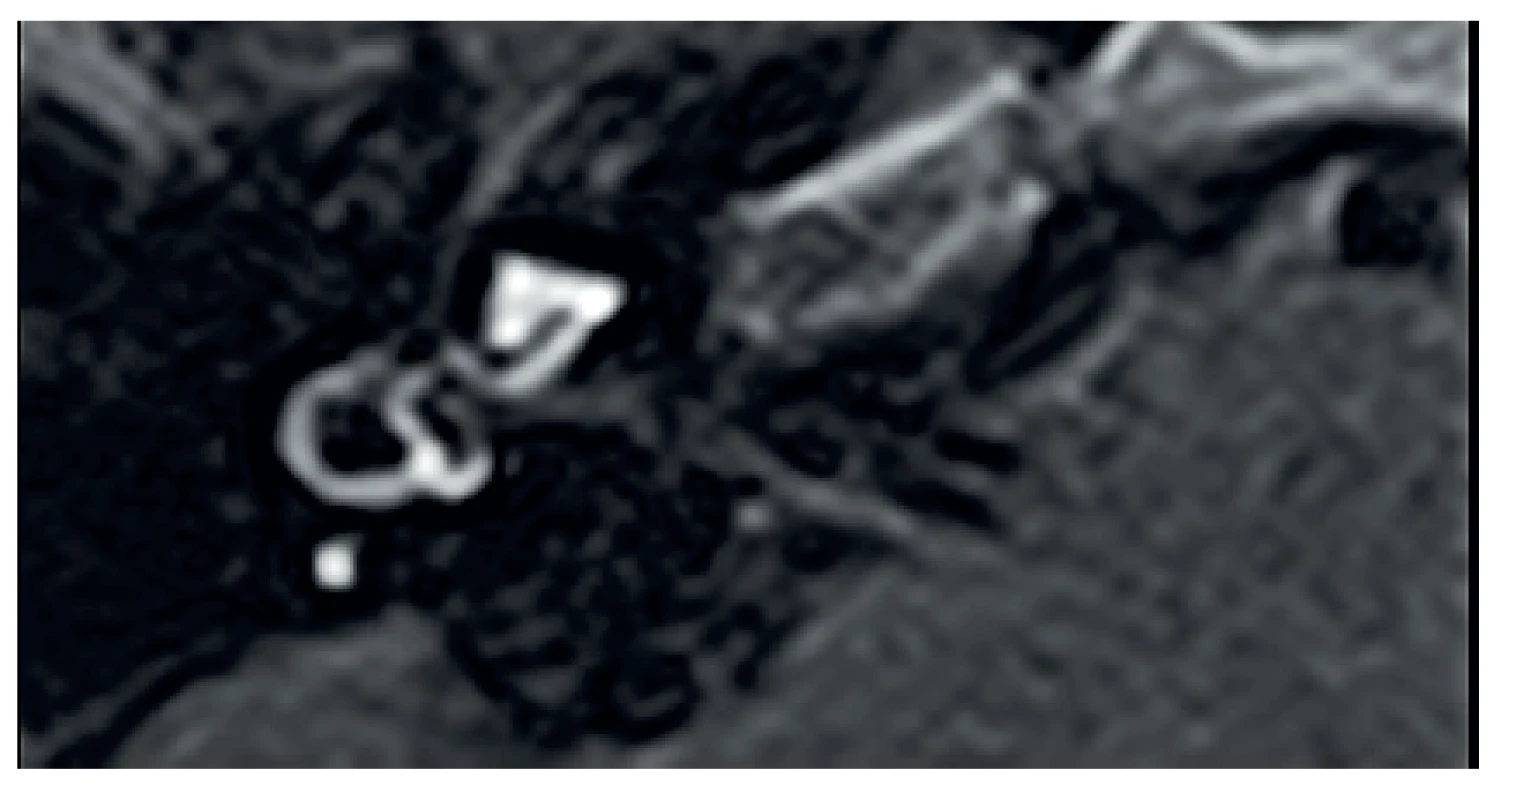 MR, axiální projekce, T1 sekvence, FLAIR, rozšíření endolymfatického prostoru vpravo v oblasti vestibula.